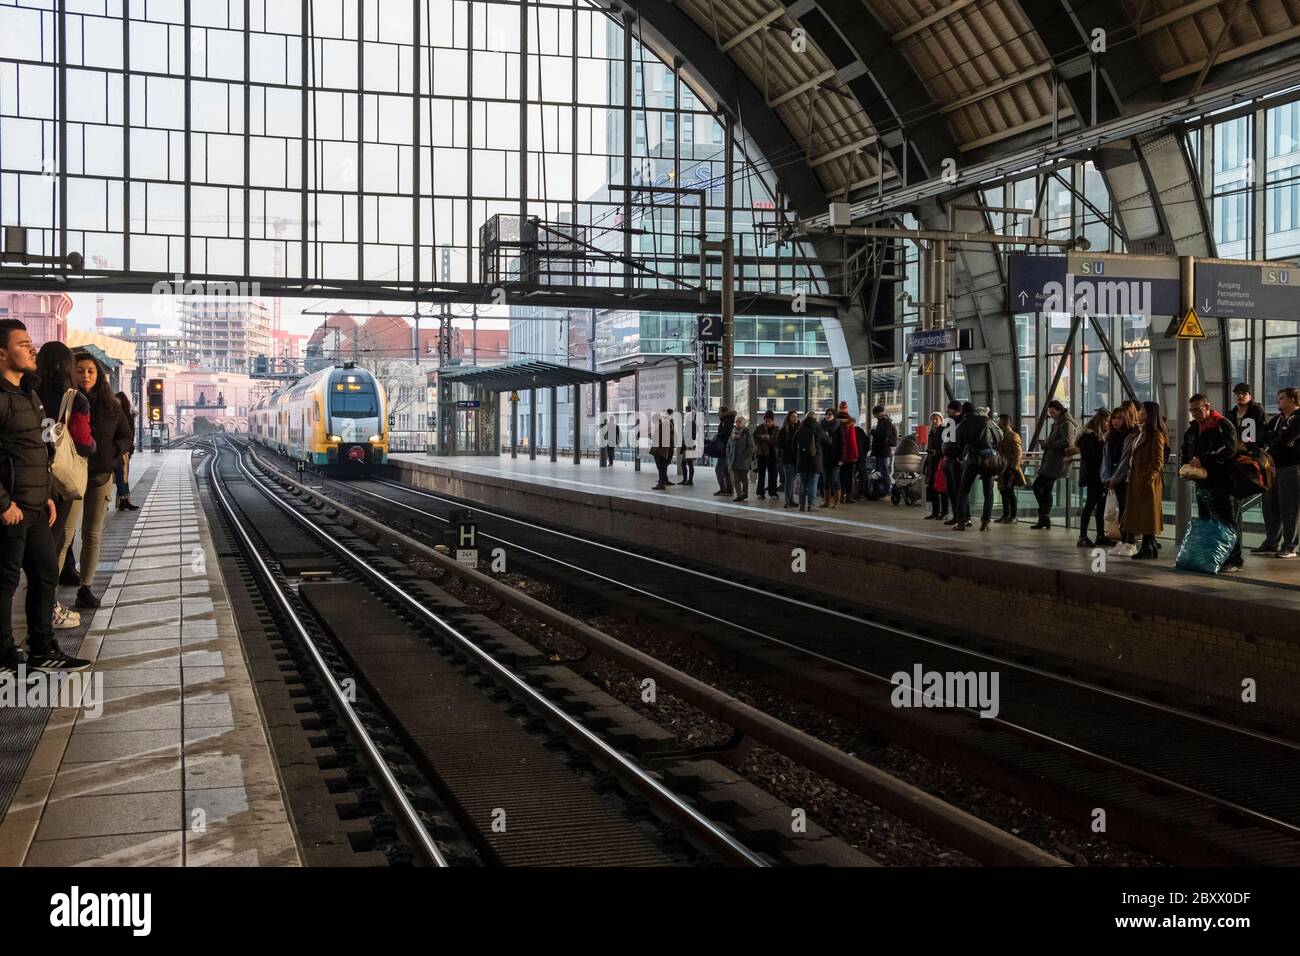 Les personnes qui voyagent pour la ville attendent la gare ferroviaire Alexanderplatz de Berlin, en Allemagne Banque D'Images